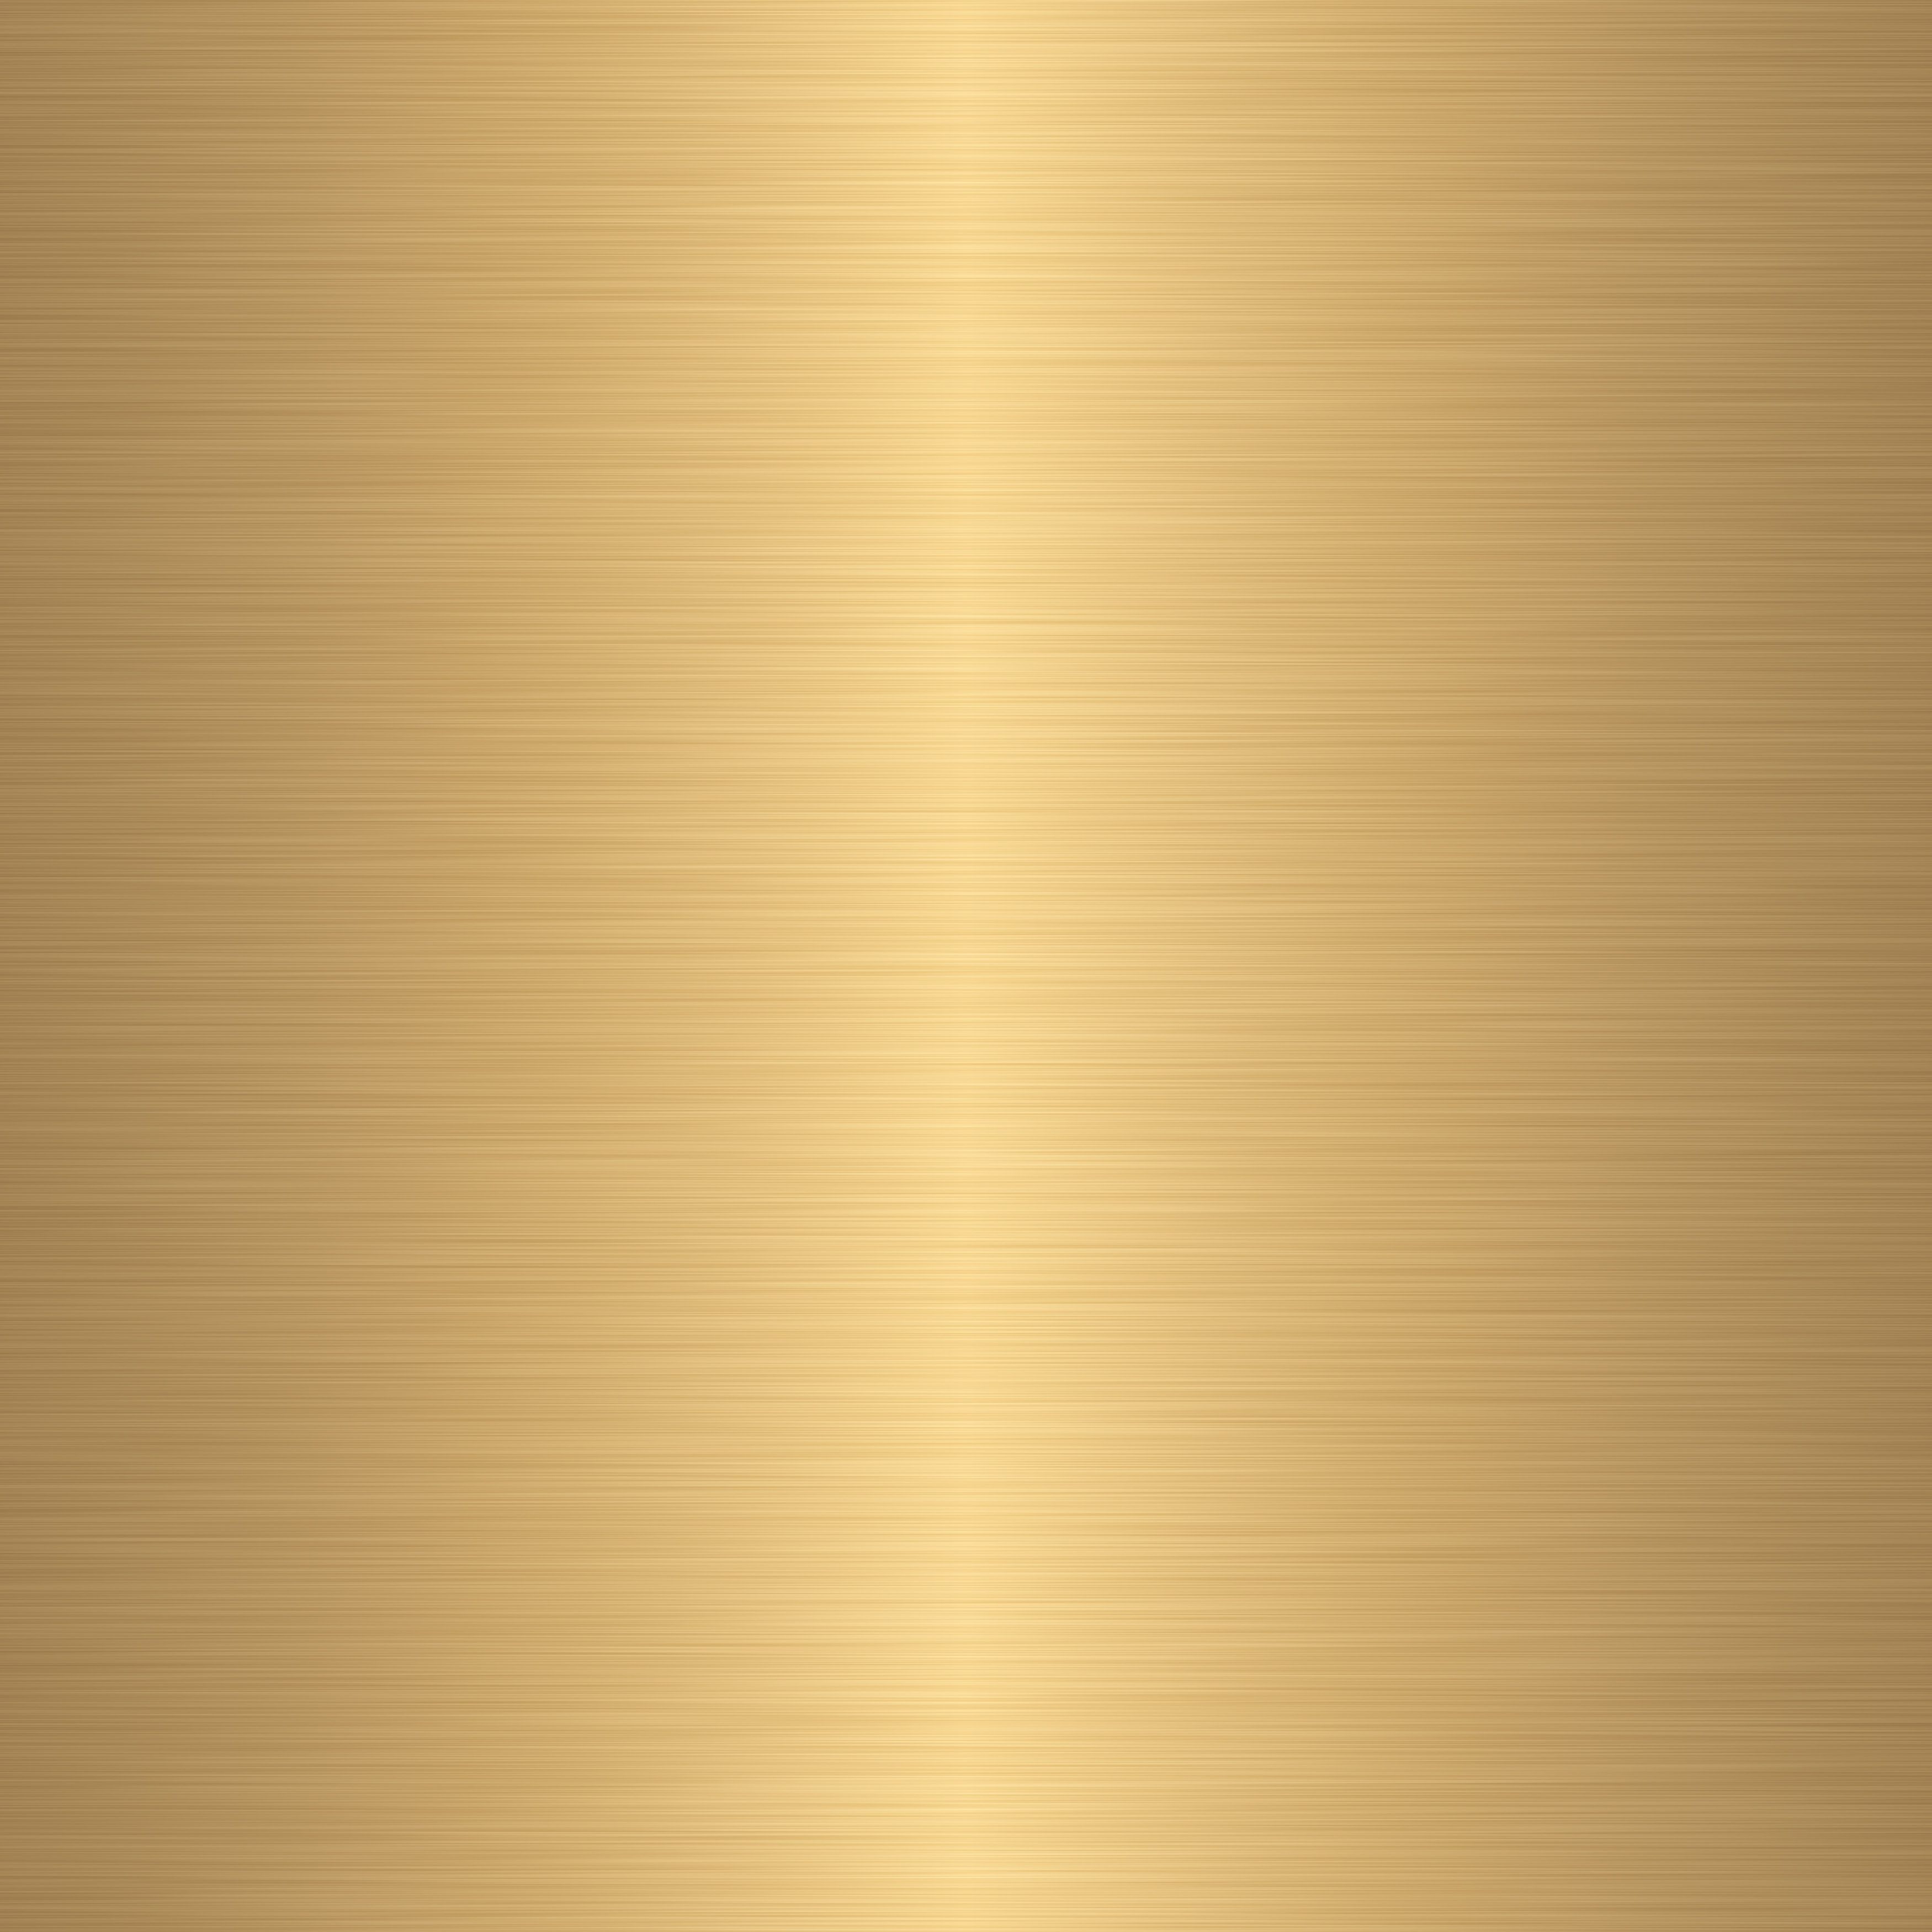 Metallic Gold Seamless Texture - HD Wallpaper 